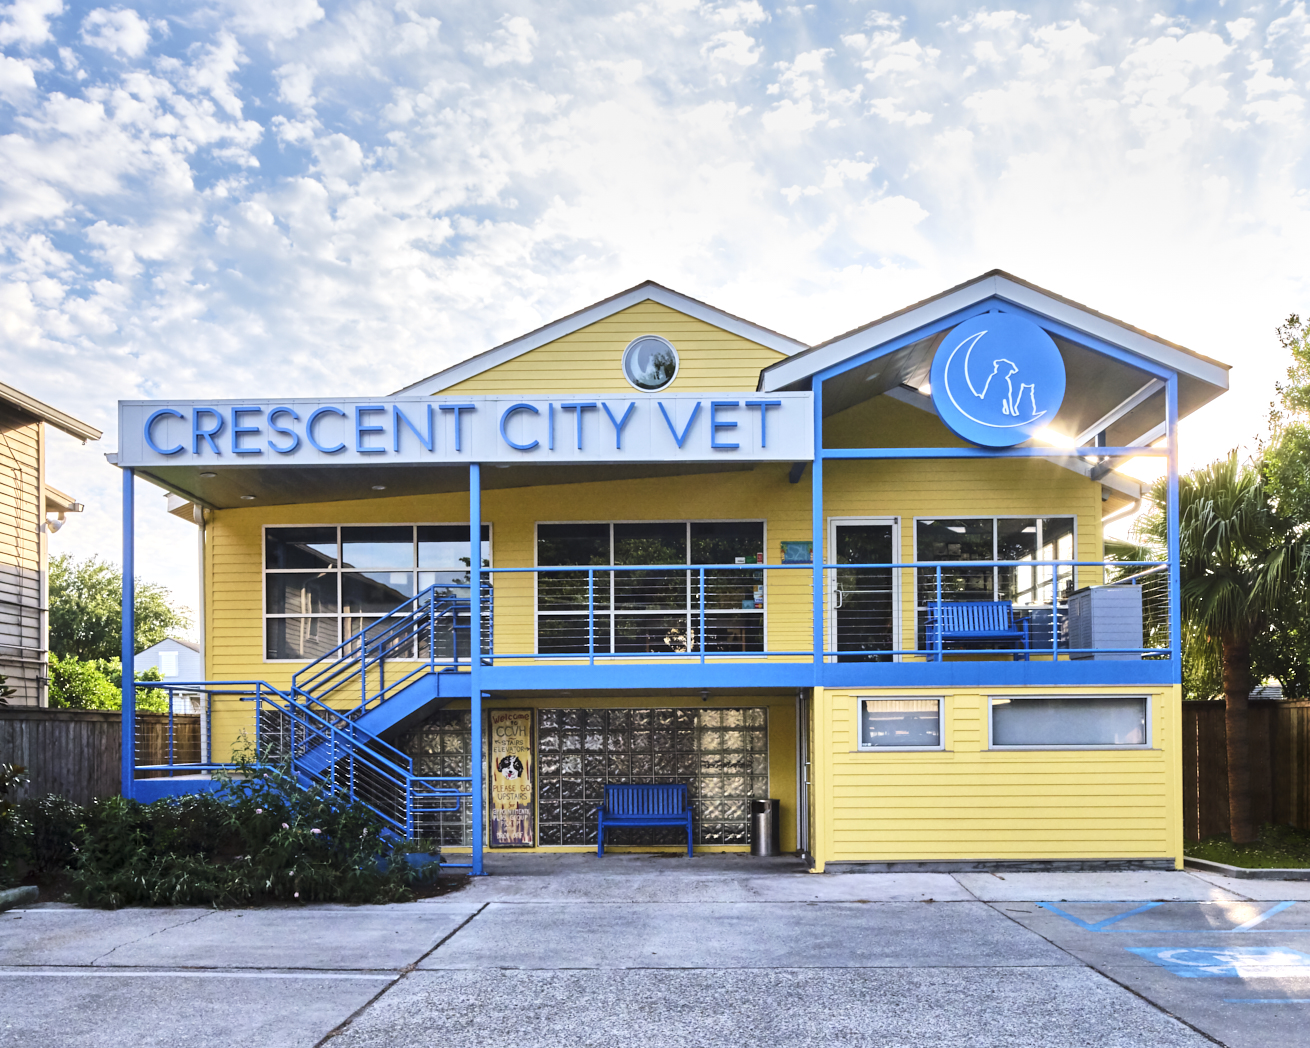 Crescent City Veterinary Hospital